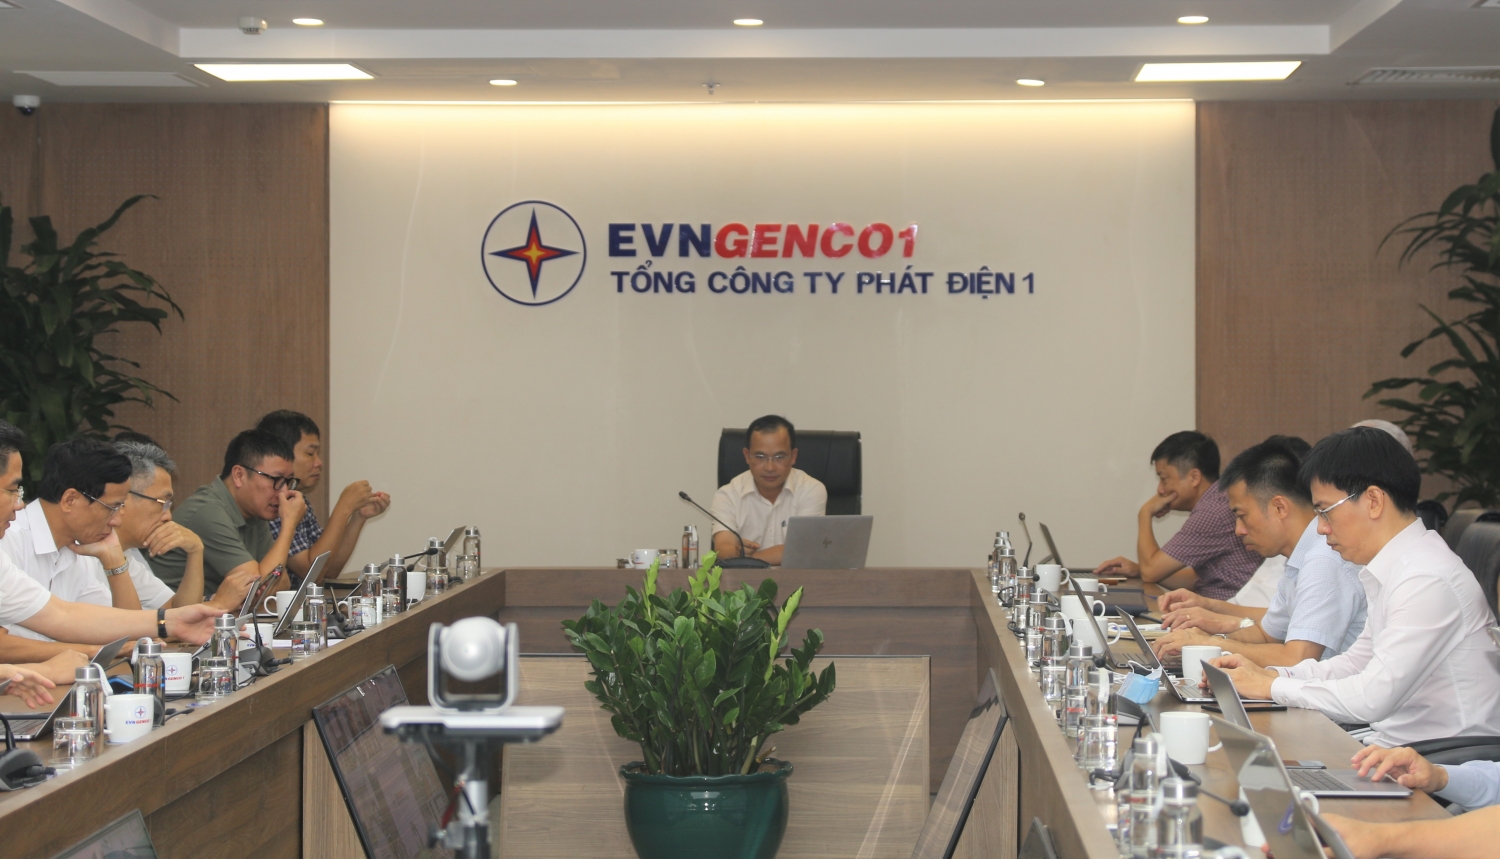 EVNGENCO1 đã sản xuất gần 21 tỷ kWh